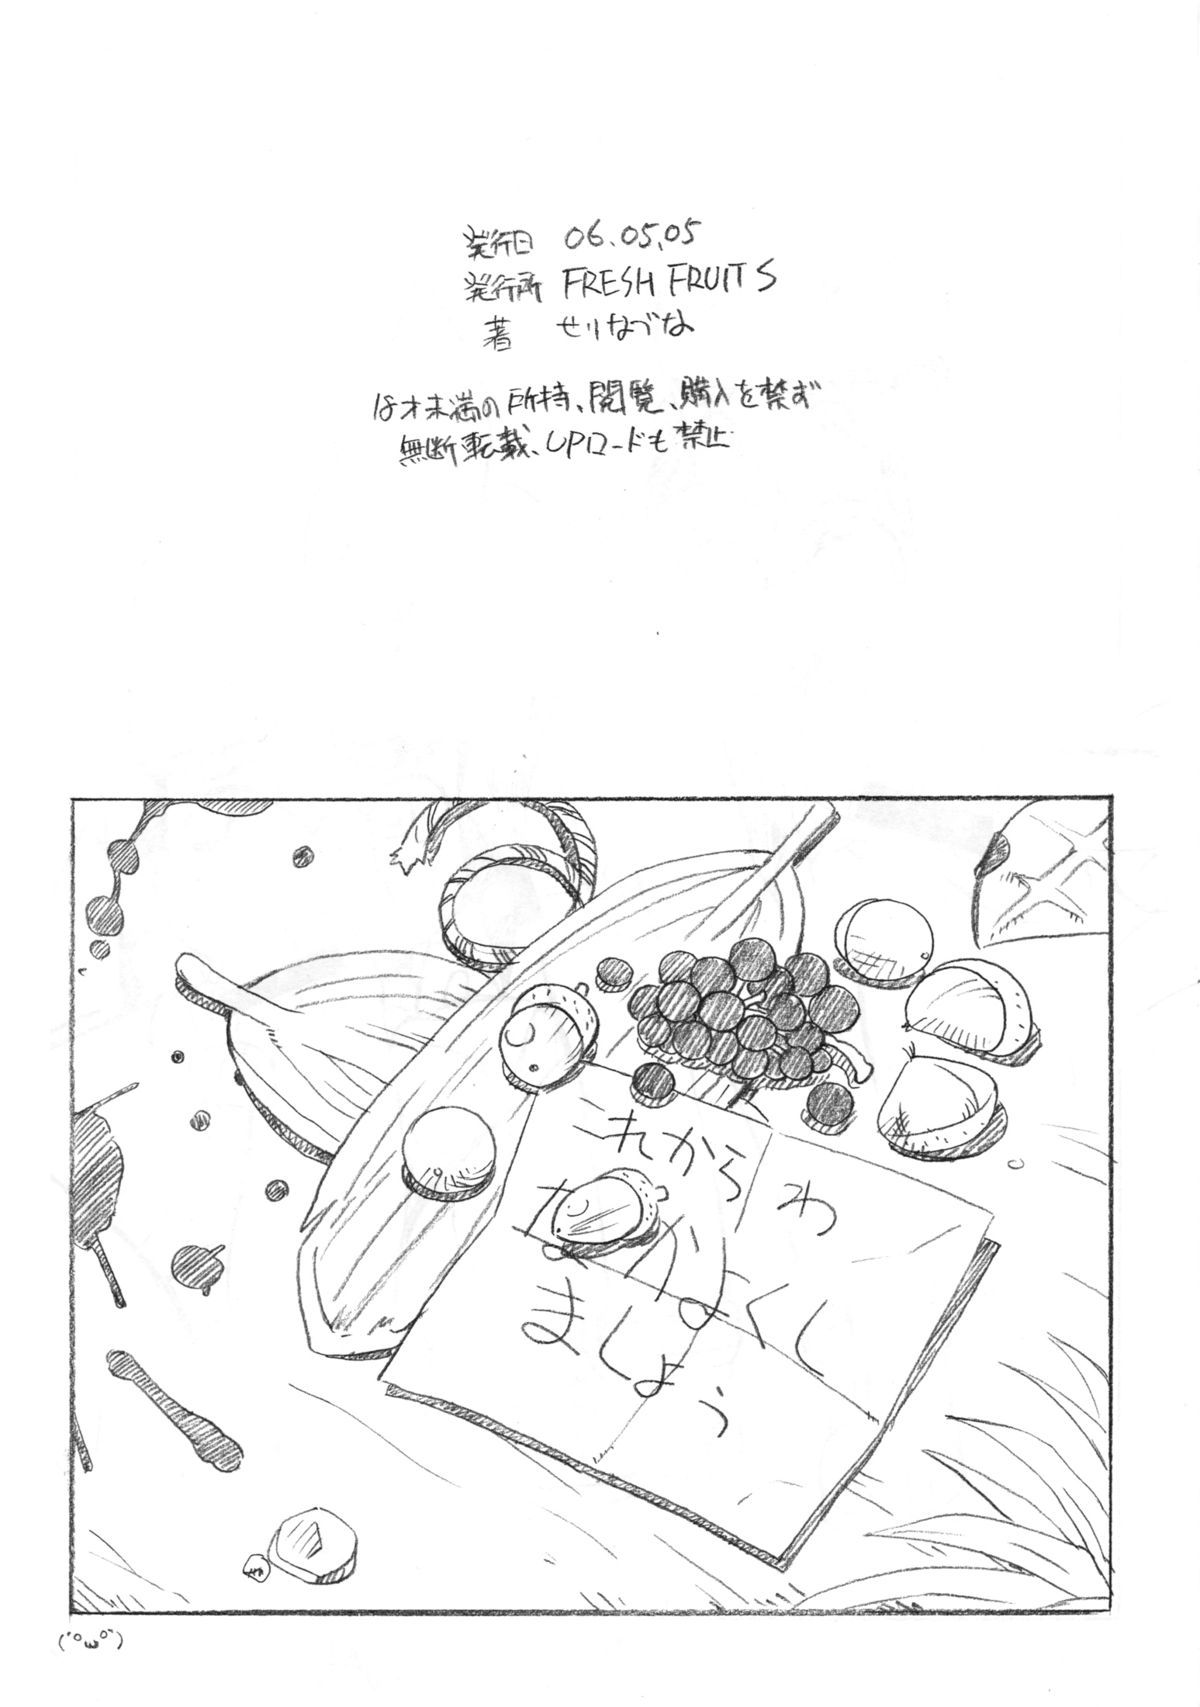 (ショタケット11) [FRESH FRUIT S (せりなづな)] Fresh Fruit S Copy Book 060505 (ビーダマン)